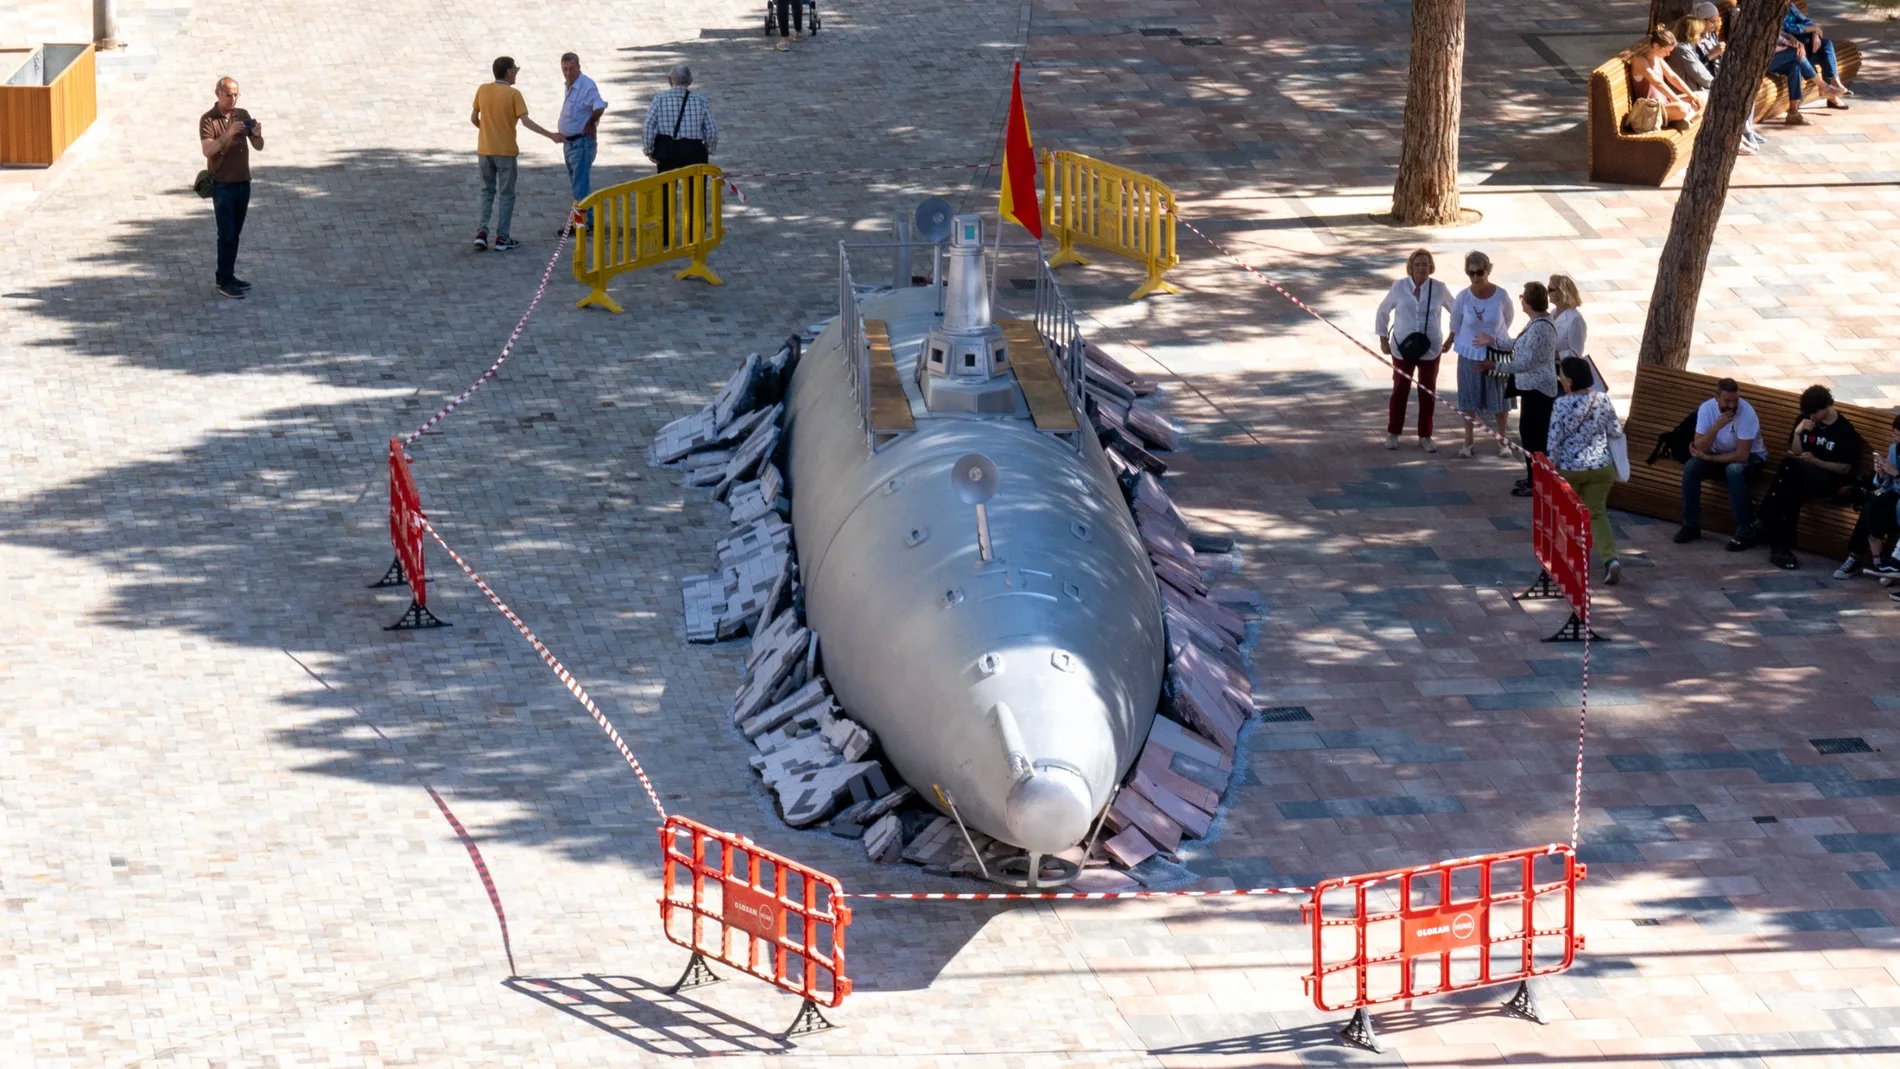 Una réplica a escala real del prototipo del submarino de Isaac Peral Cartagena ha emergido en el centro de Cartagena